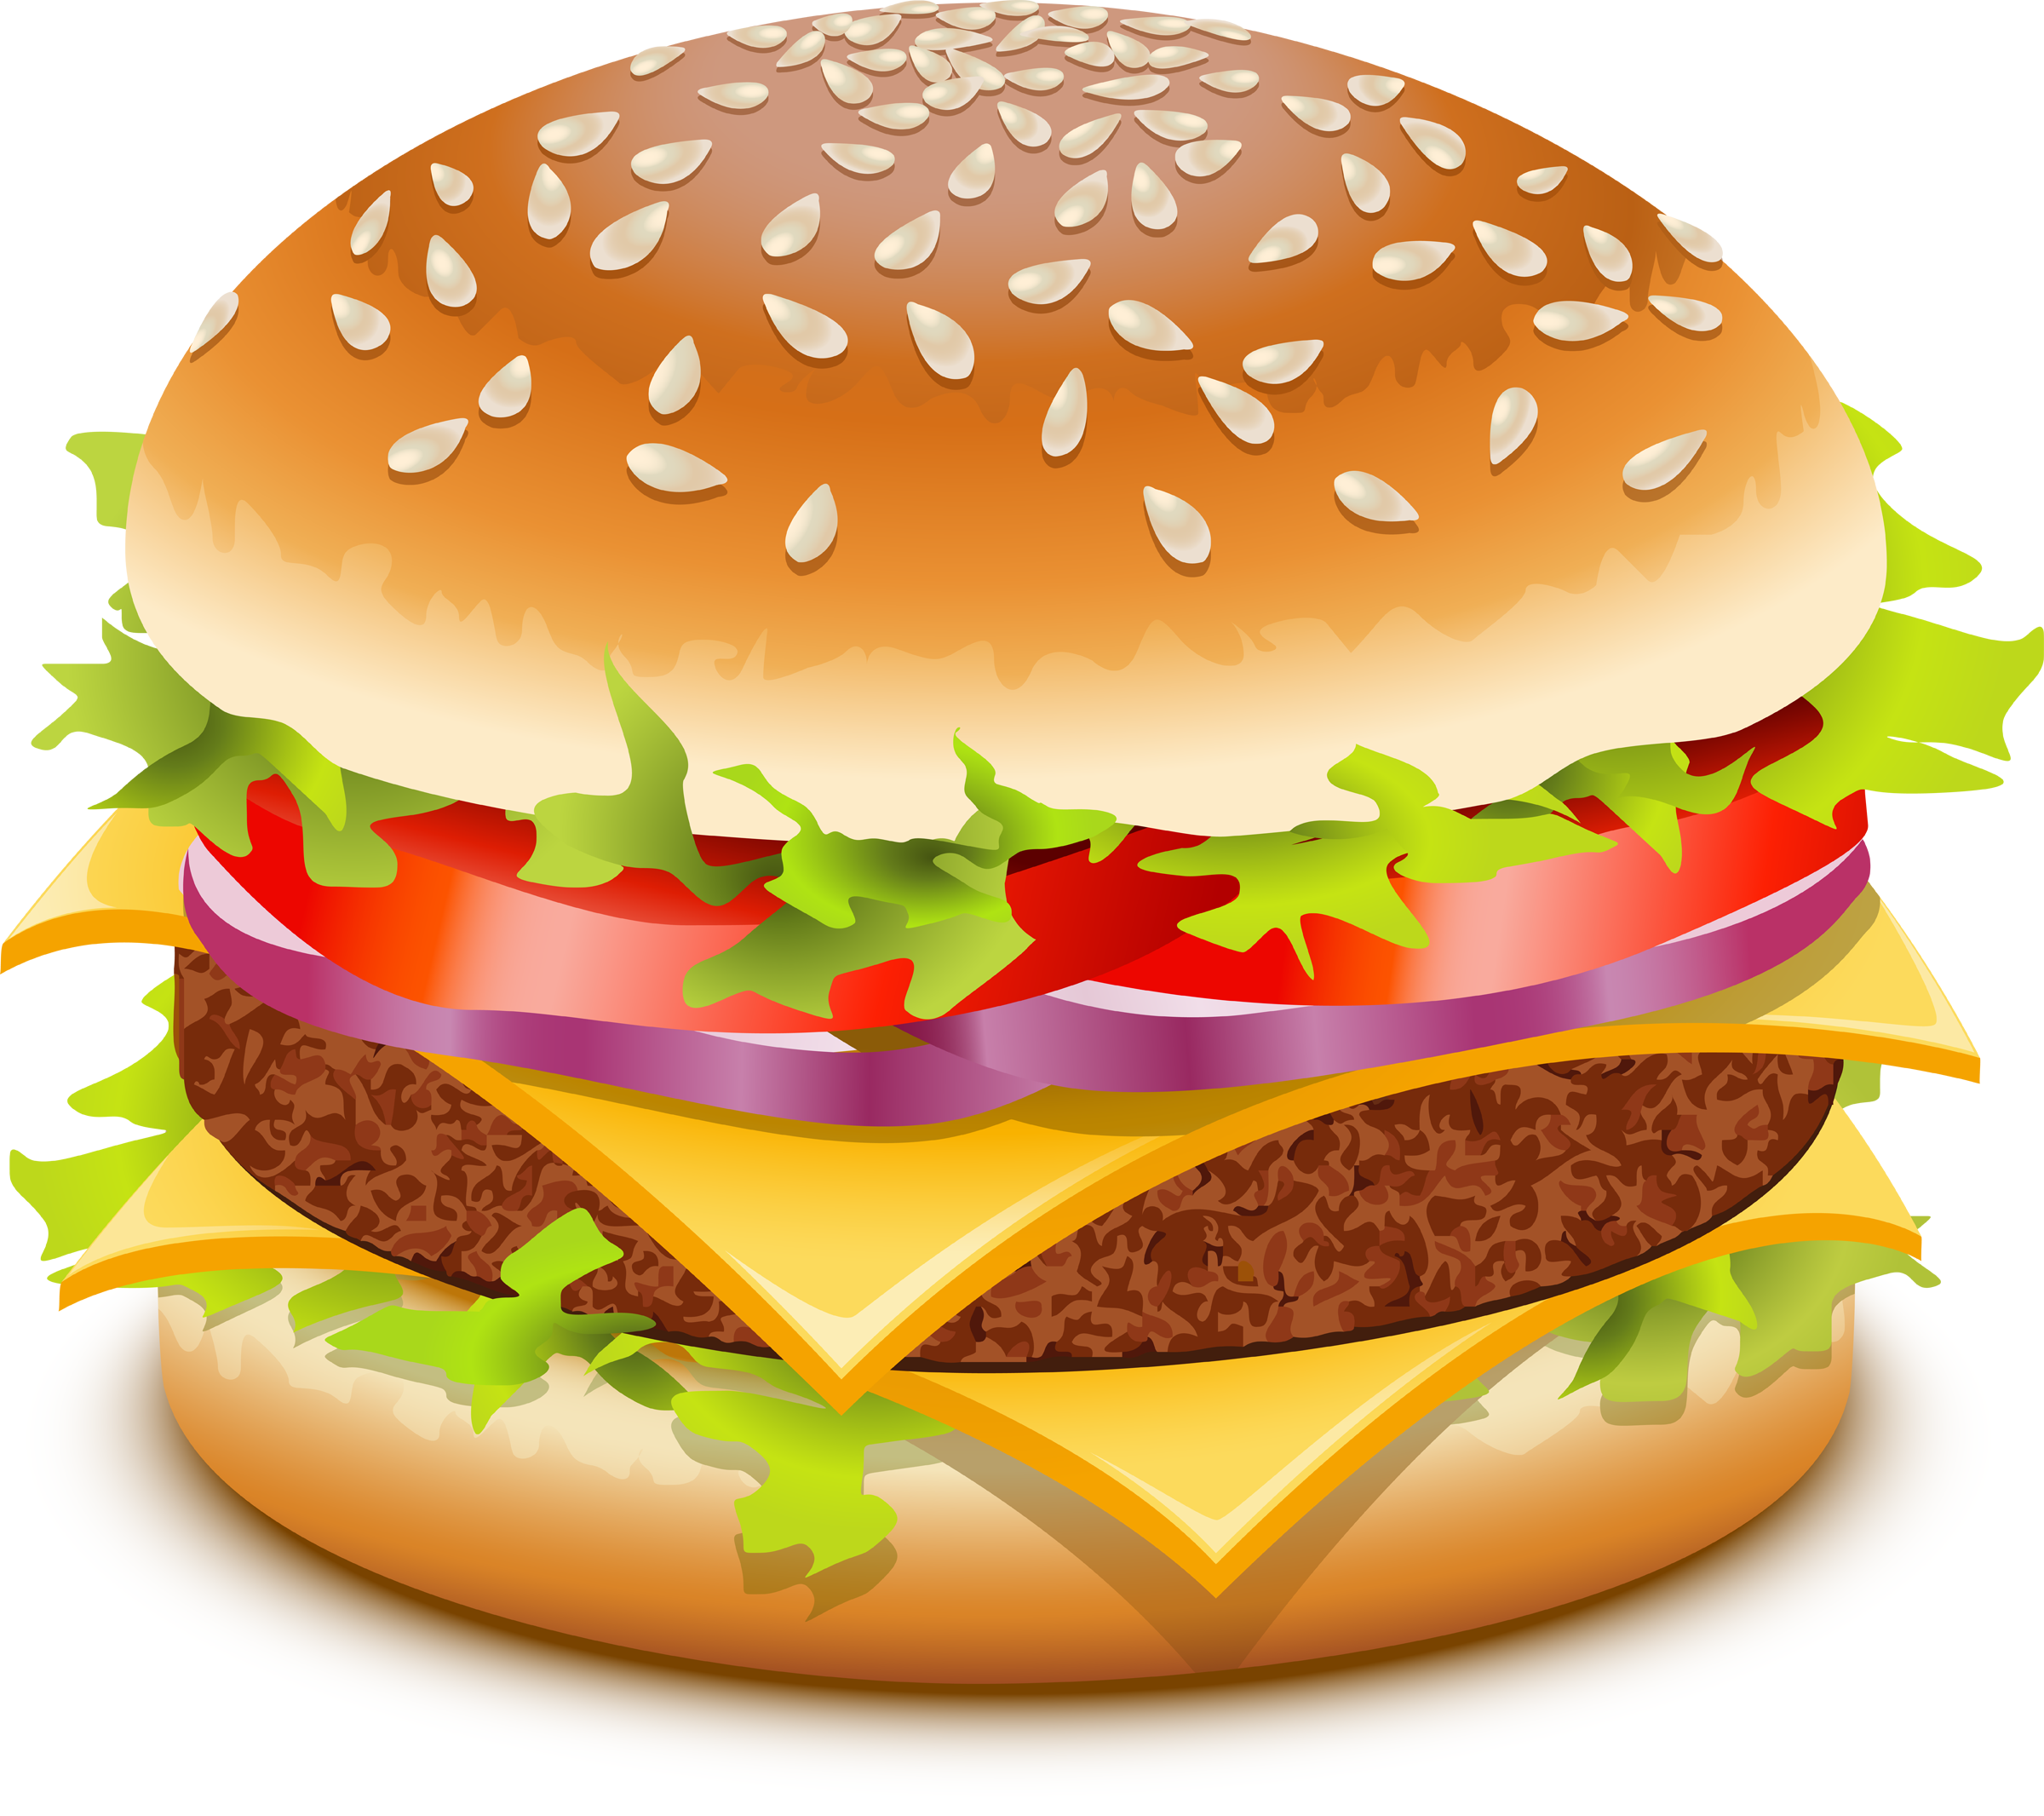 Hamburger burger clipart free clipart image 7703